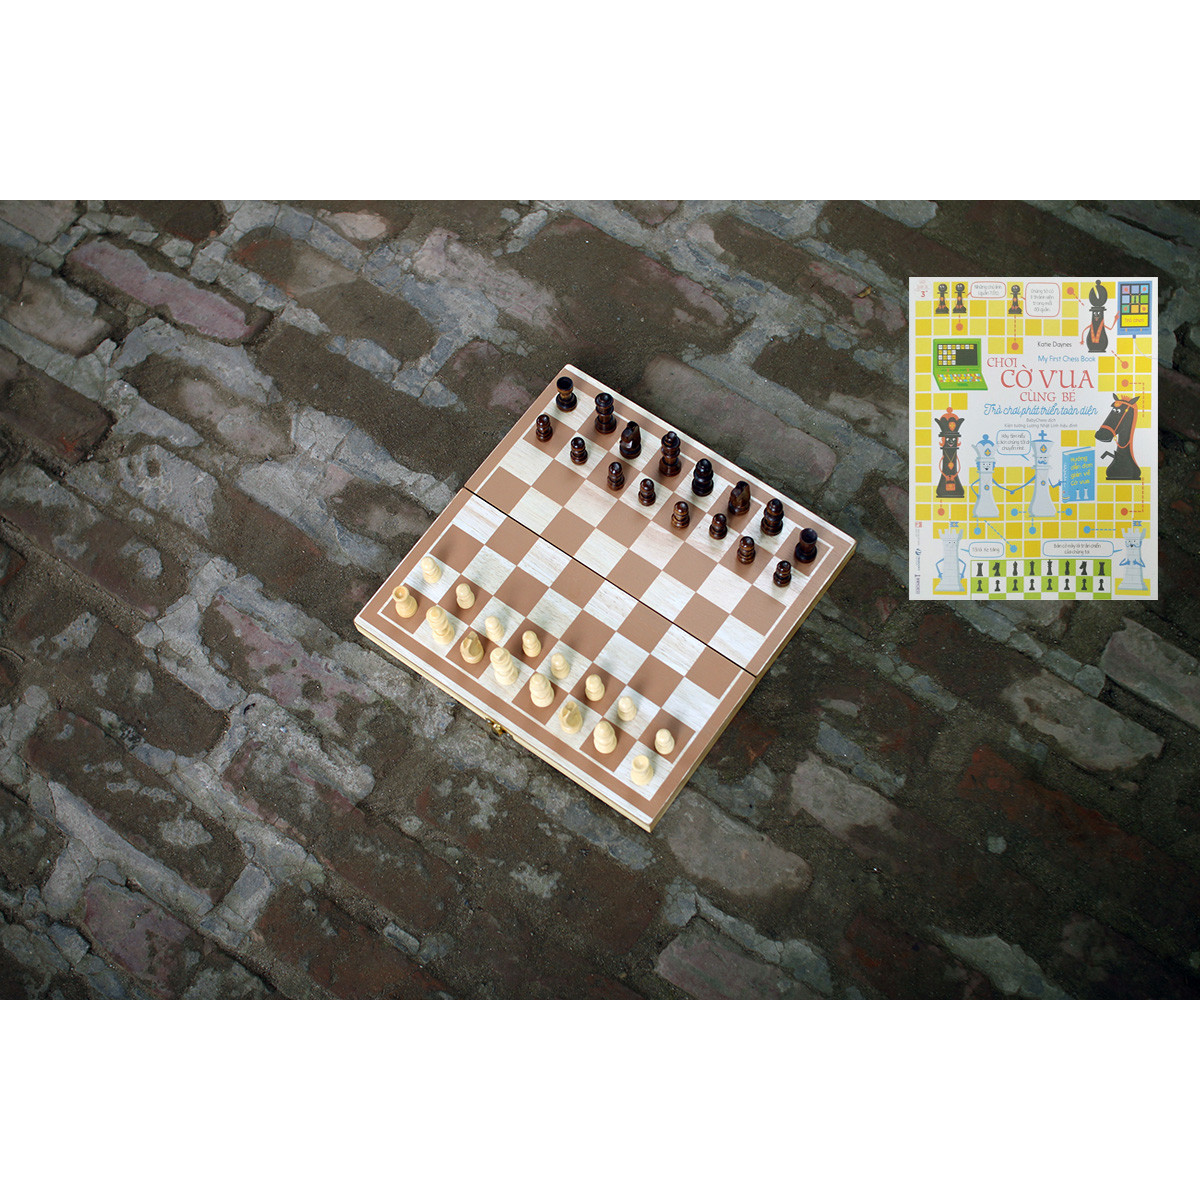 Bộ cờ vua cao cấp bằng gỗ tự nhiên an toàn cho bé, đồ chơi phát triển trí tuệ cho trẻ em - Tặng hướng dẫn đánh cờ vua giỏi.